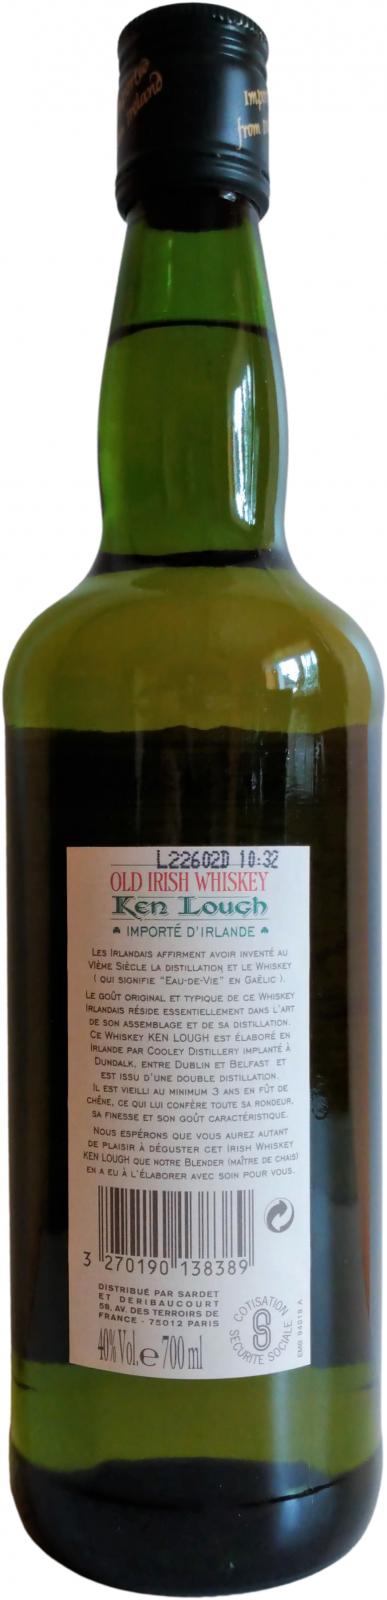 Ken Lough Old Irish Whiskey